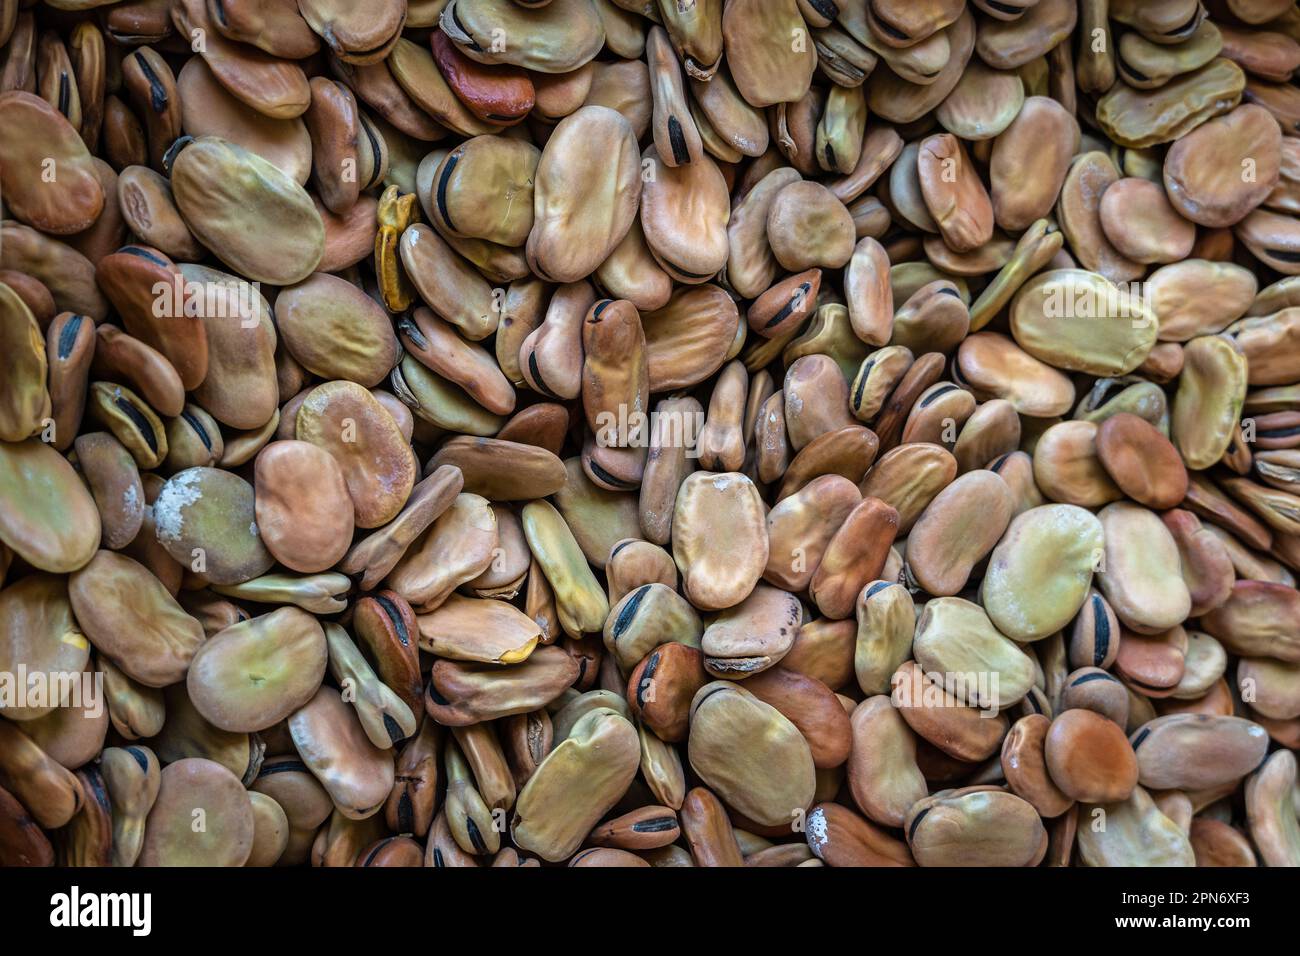 Fave secche, Vicia faba, al mercato. Il fagiolo è una pianta della famiglia delle Leguminose. Abruzzo, Italia, Europa Foto Stock